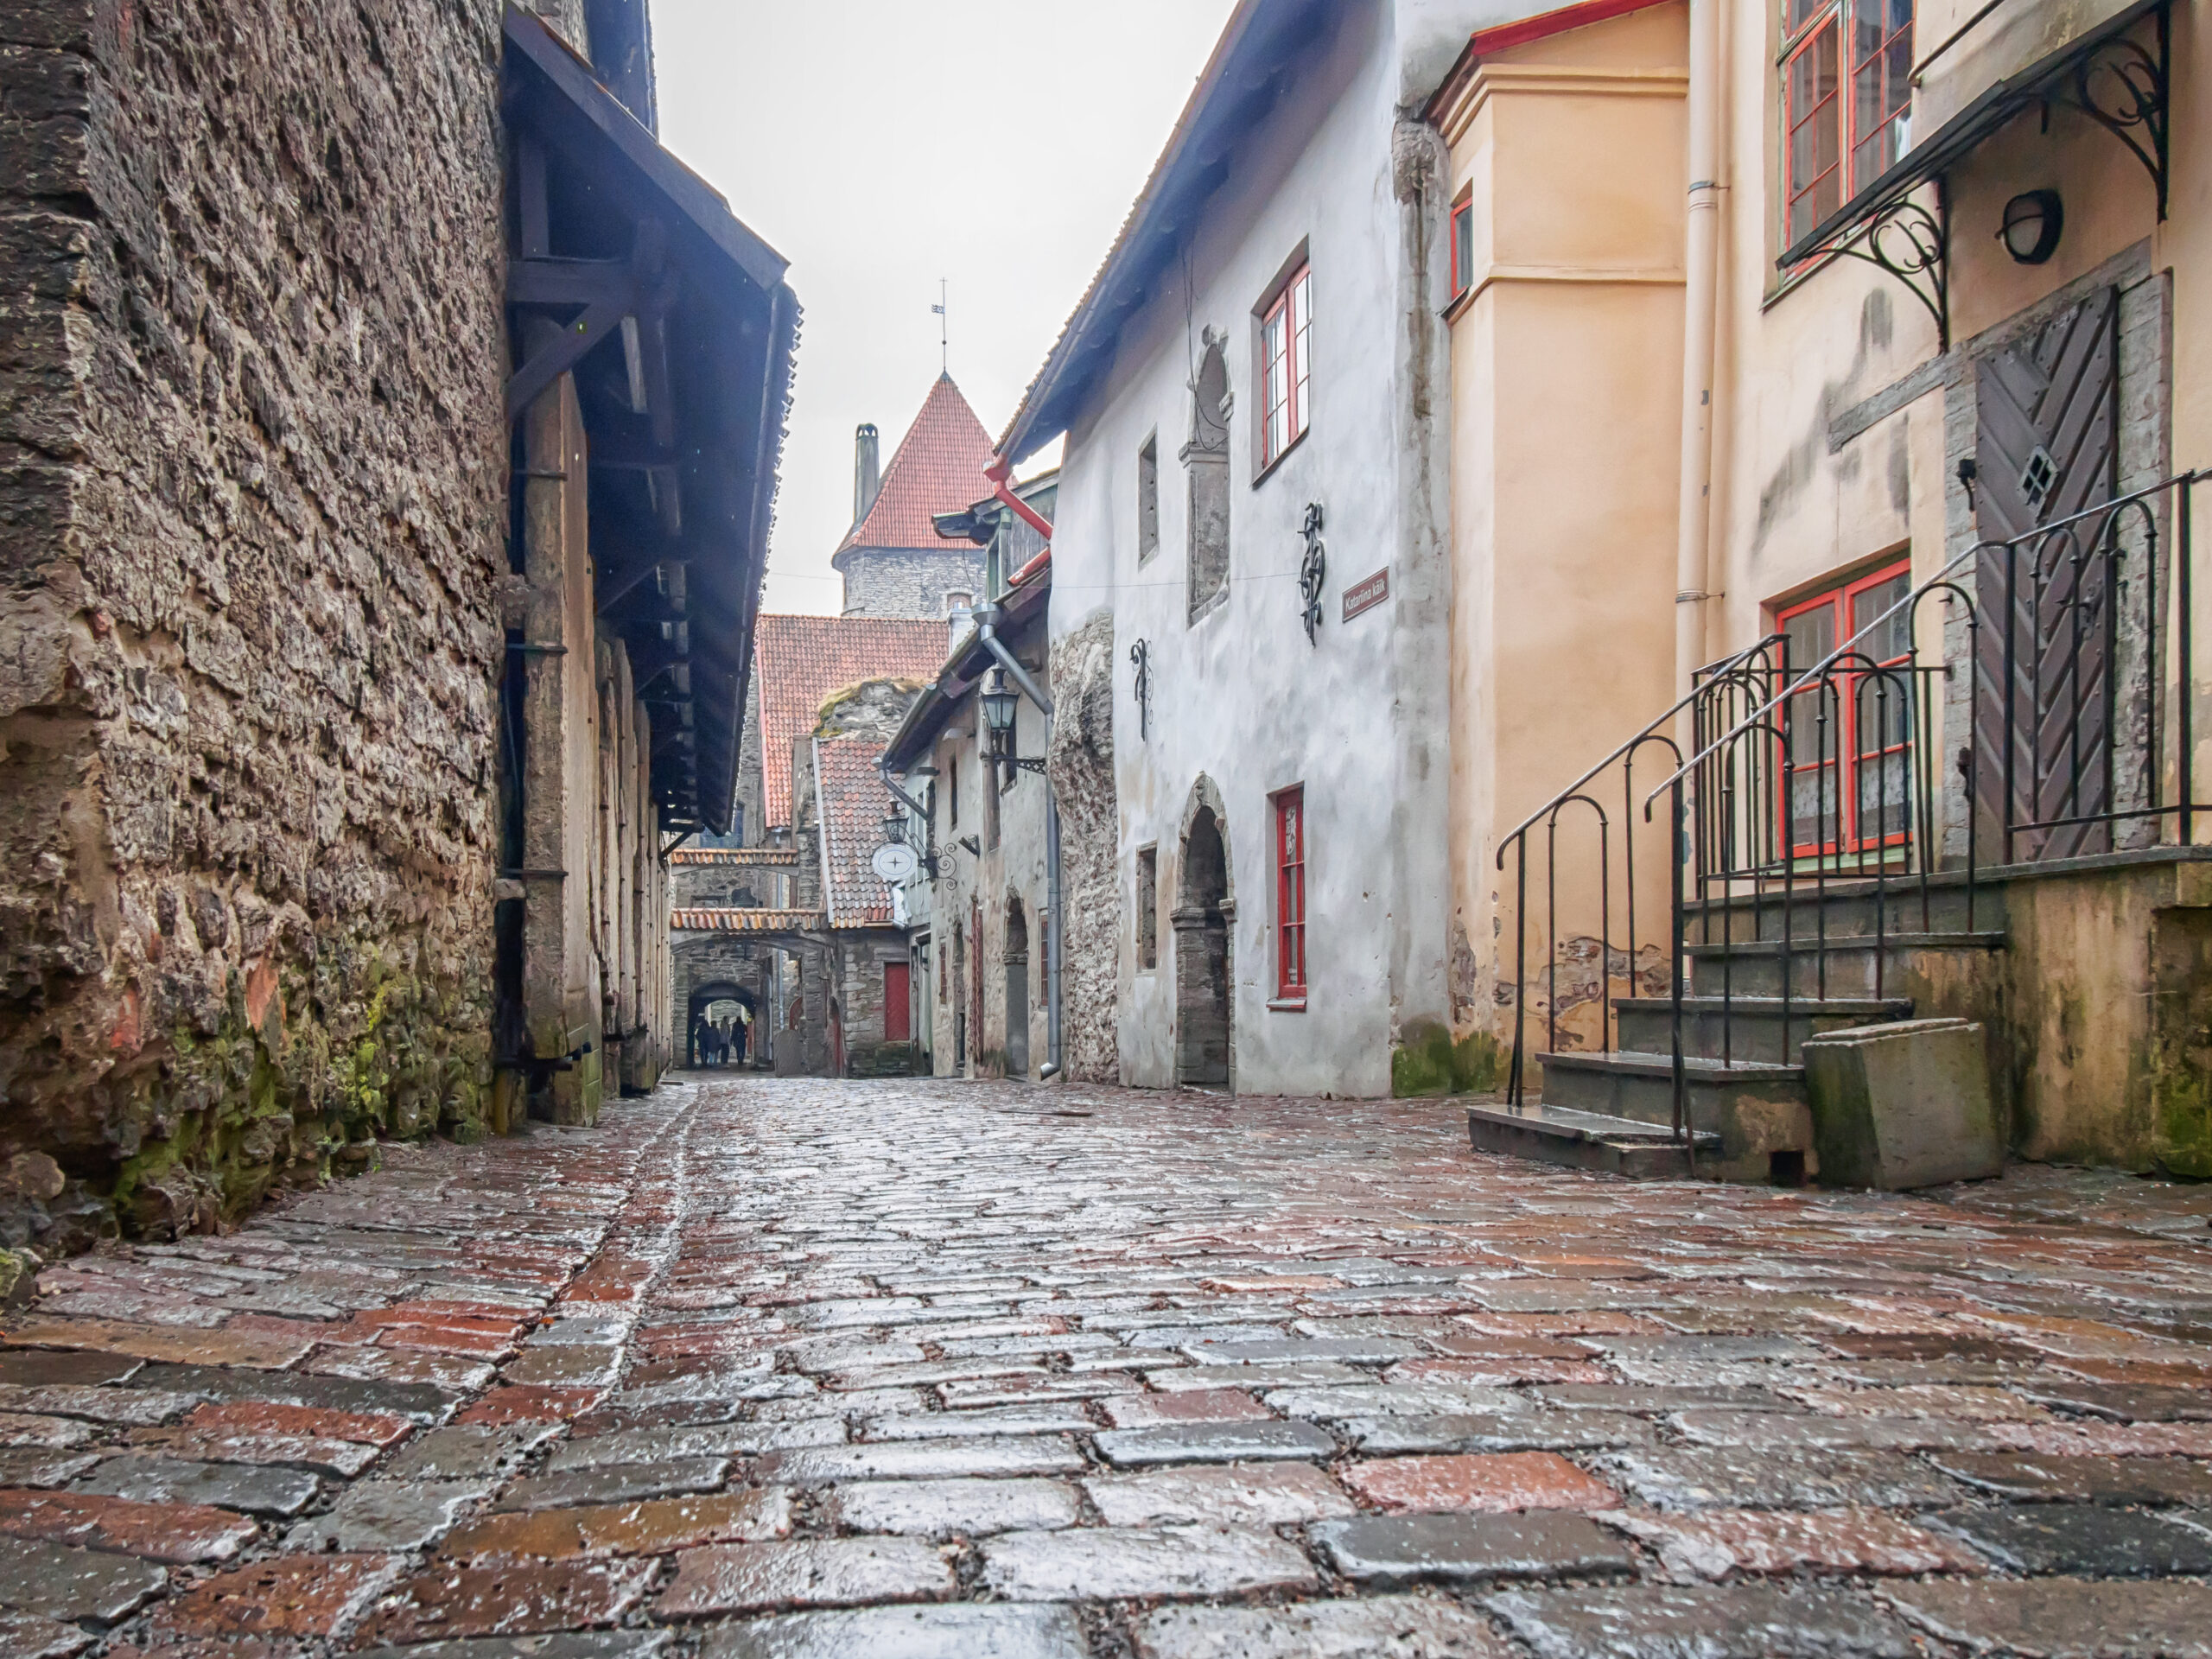 Medieval street, walkway in old town Estonia.